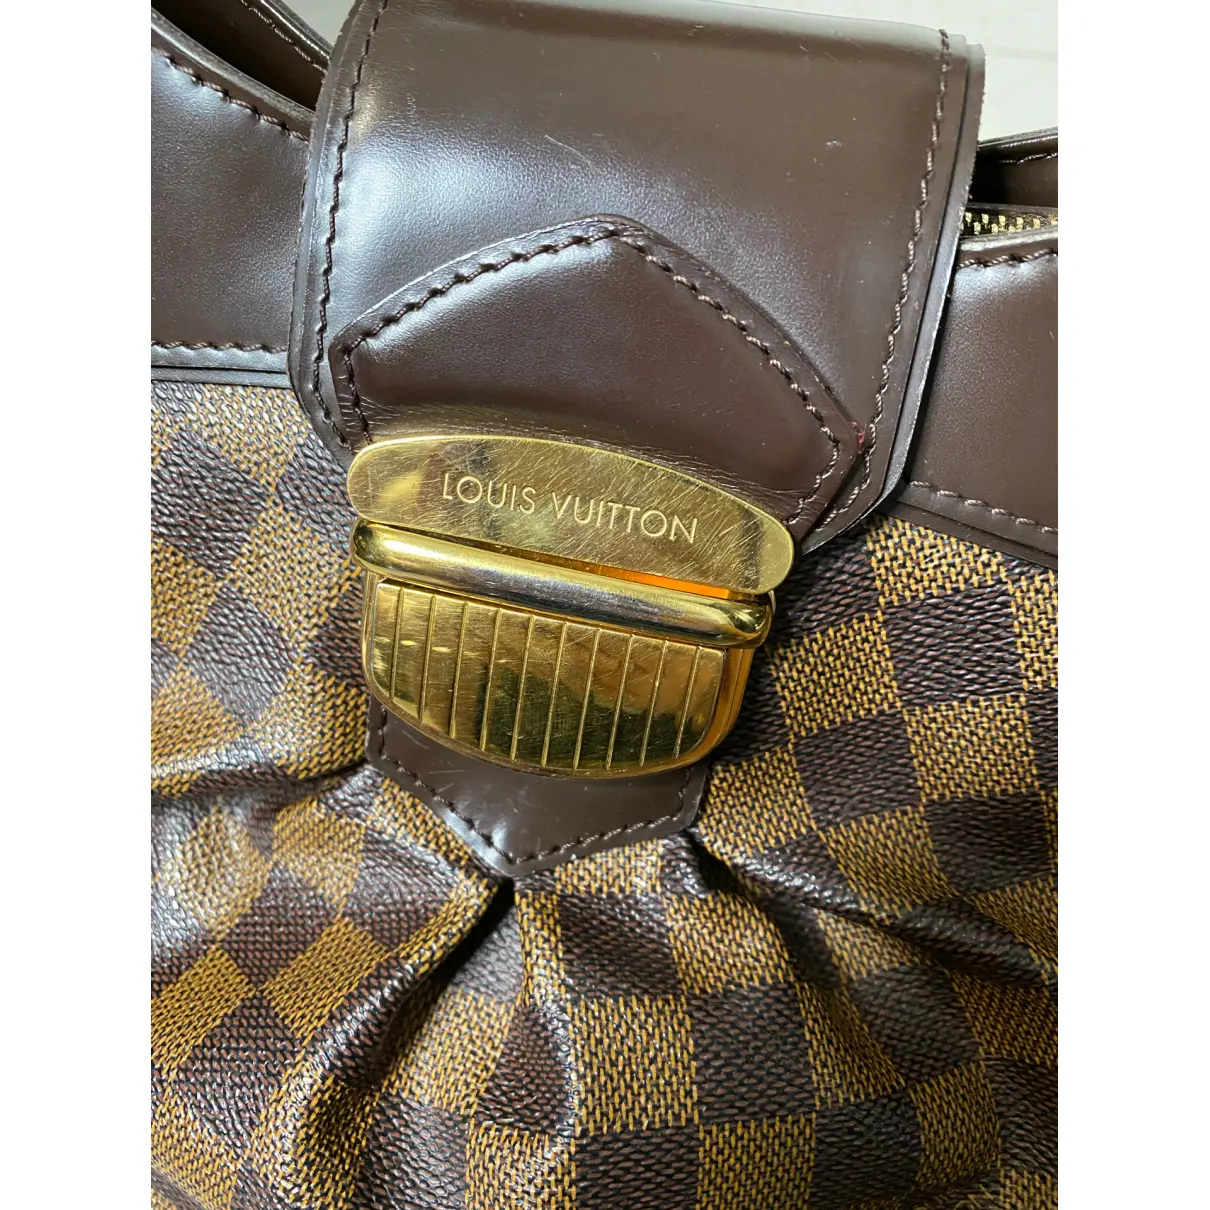 Buy Louis Vuitton Sistina cloth handbag online